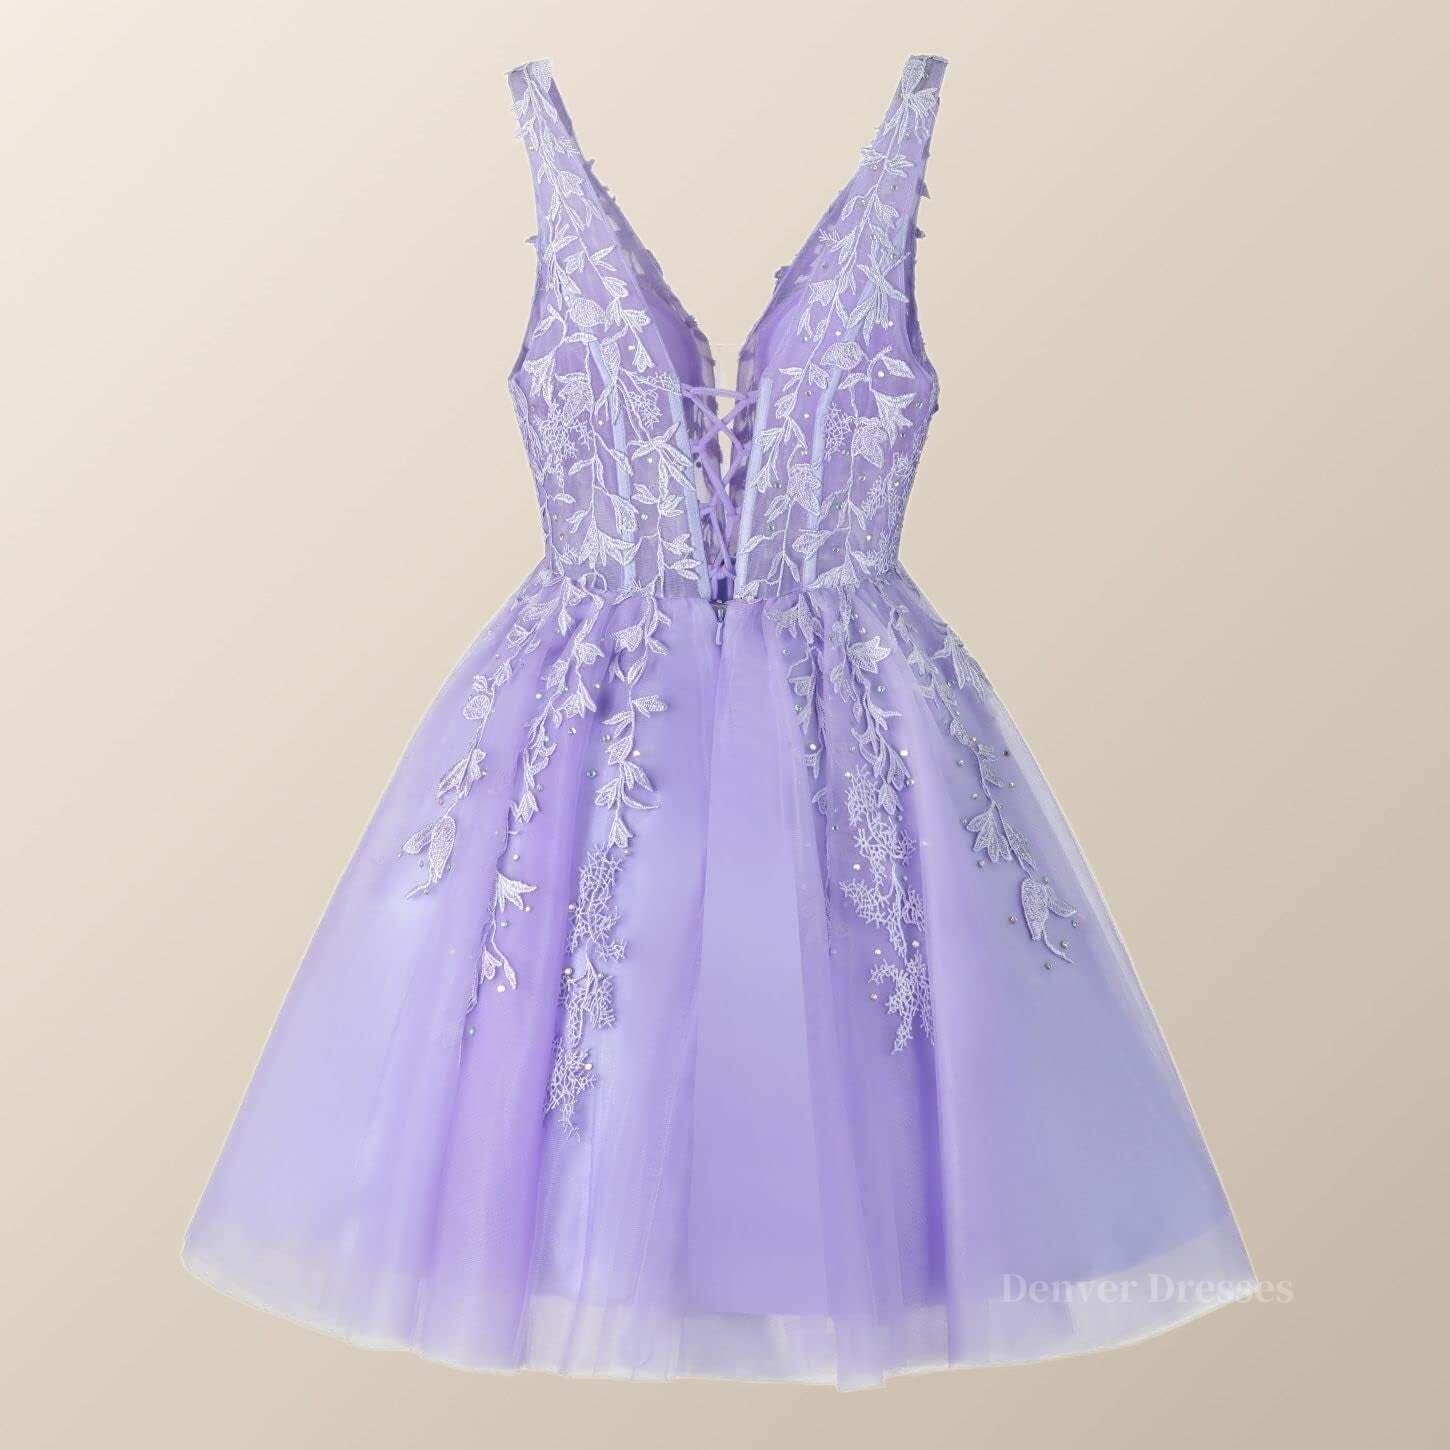 Formal Dress For Weddings, V Neck Lavender Appliques A-line Short Homecoming Dress